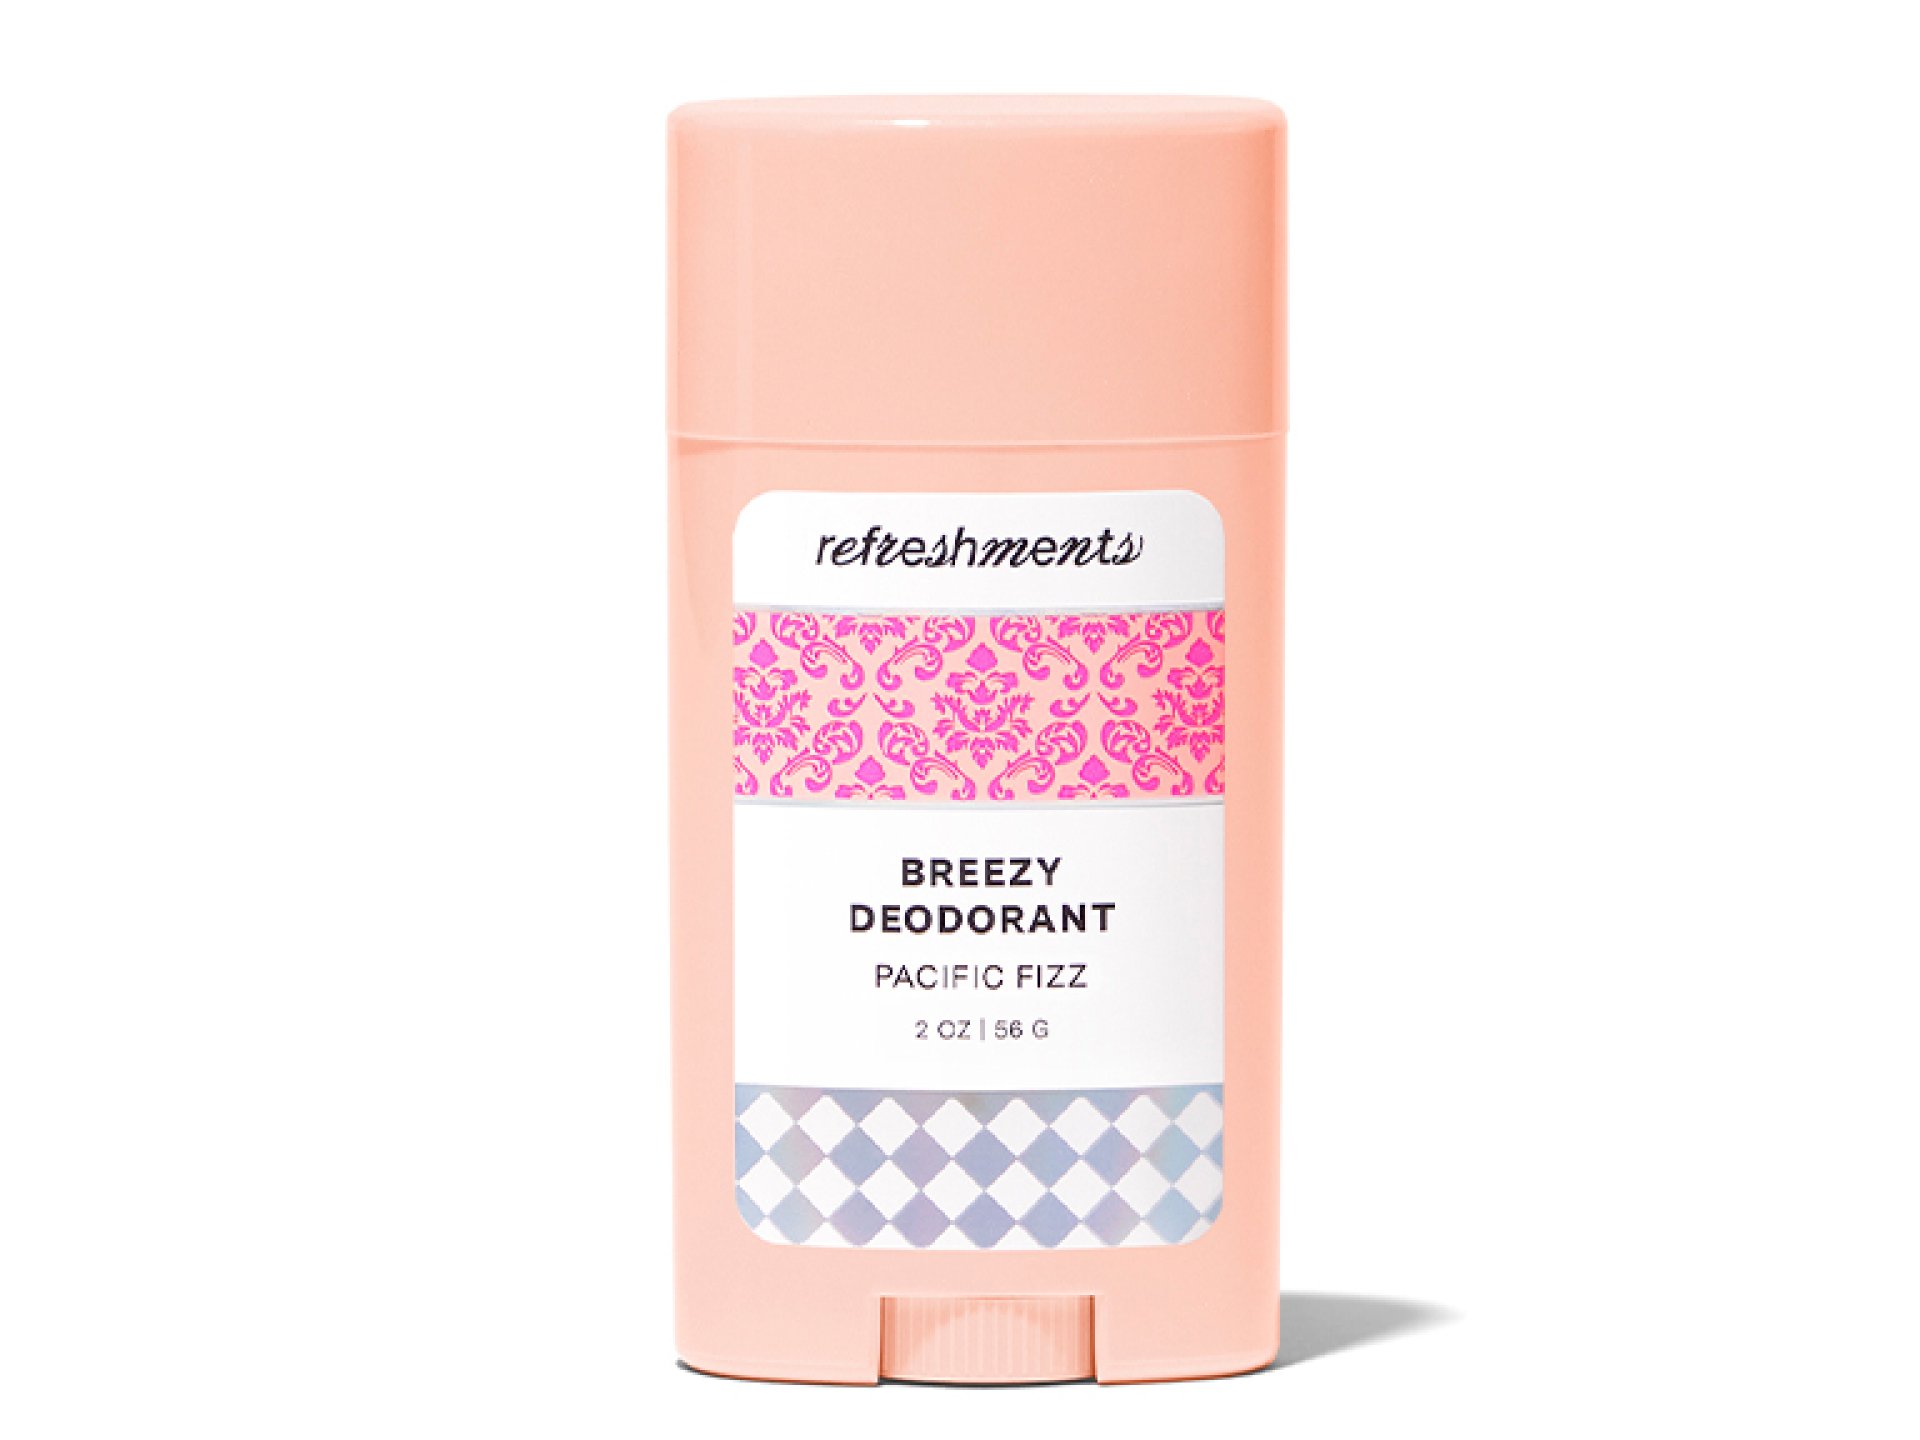 REFRESHMENTS Breezy Deodorant in Pacific Fizz